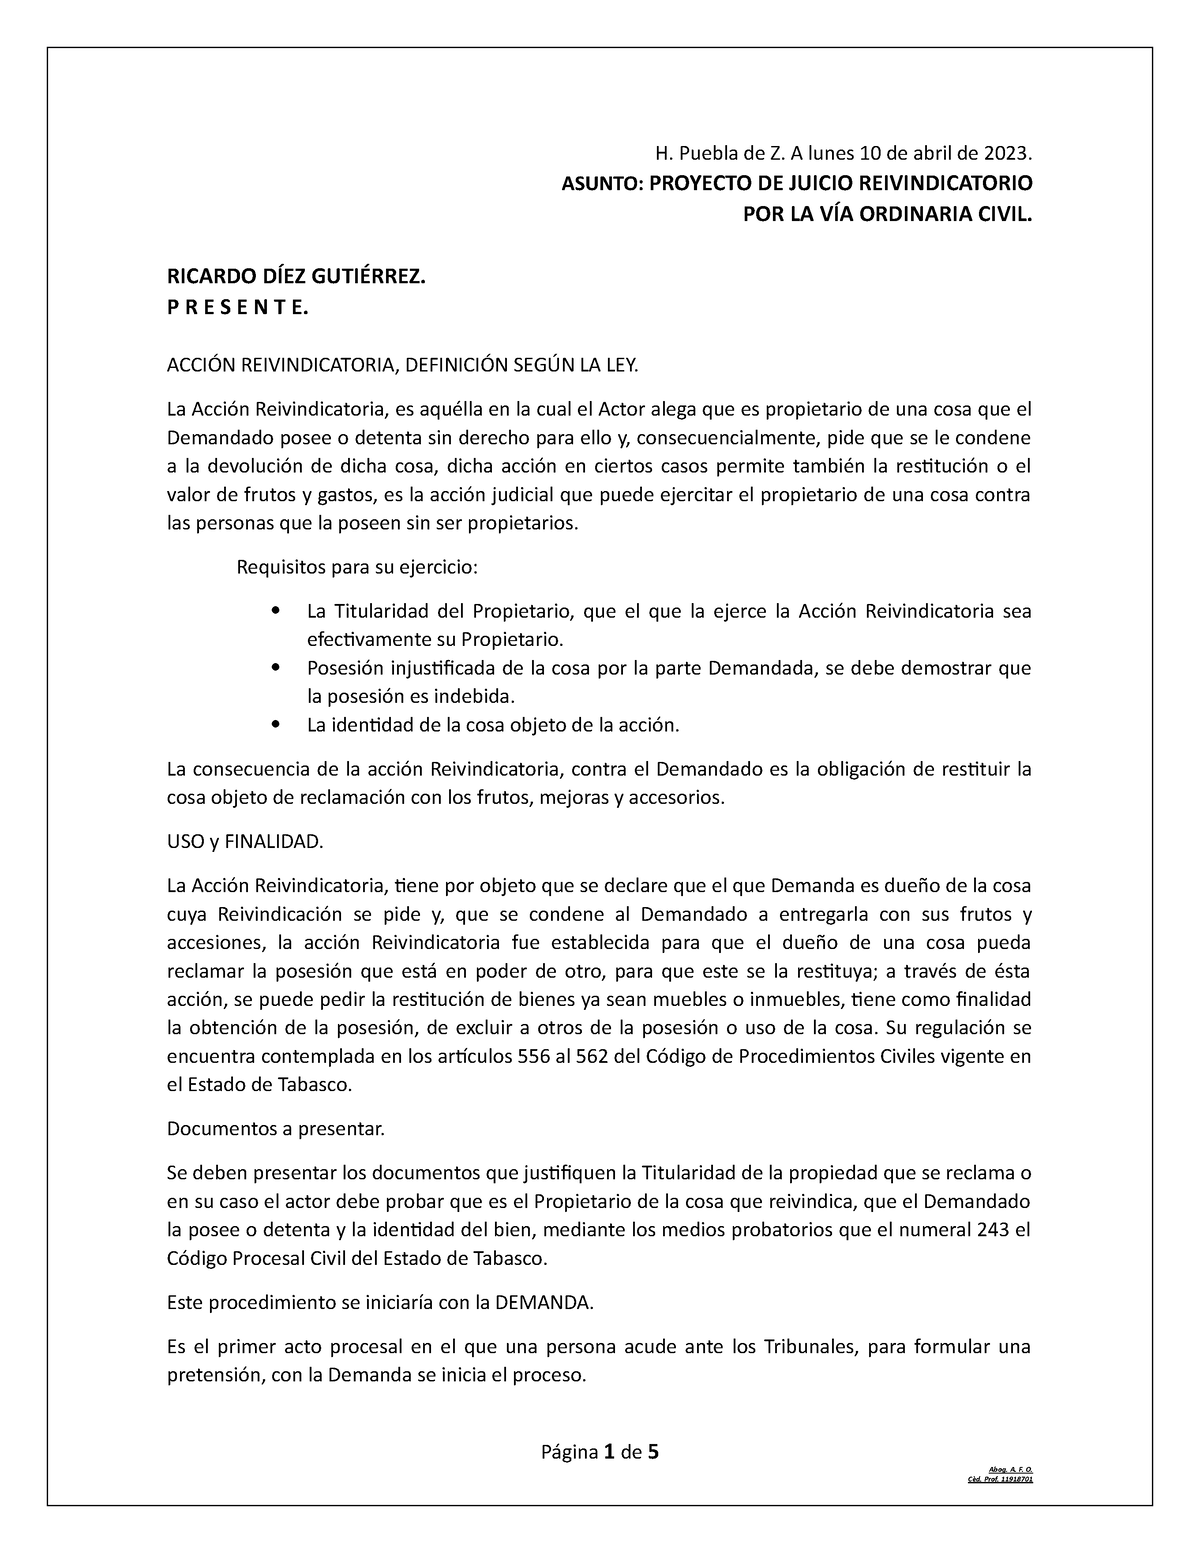 Proyecto Juicio Reivindicatorio - H. Puebla de Z. A lunes 10 de abril ...